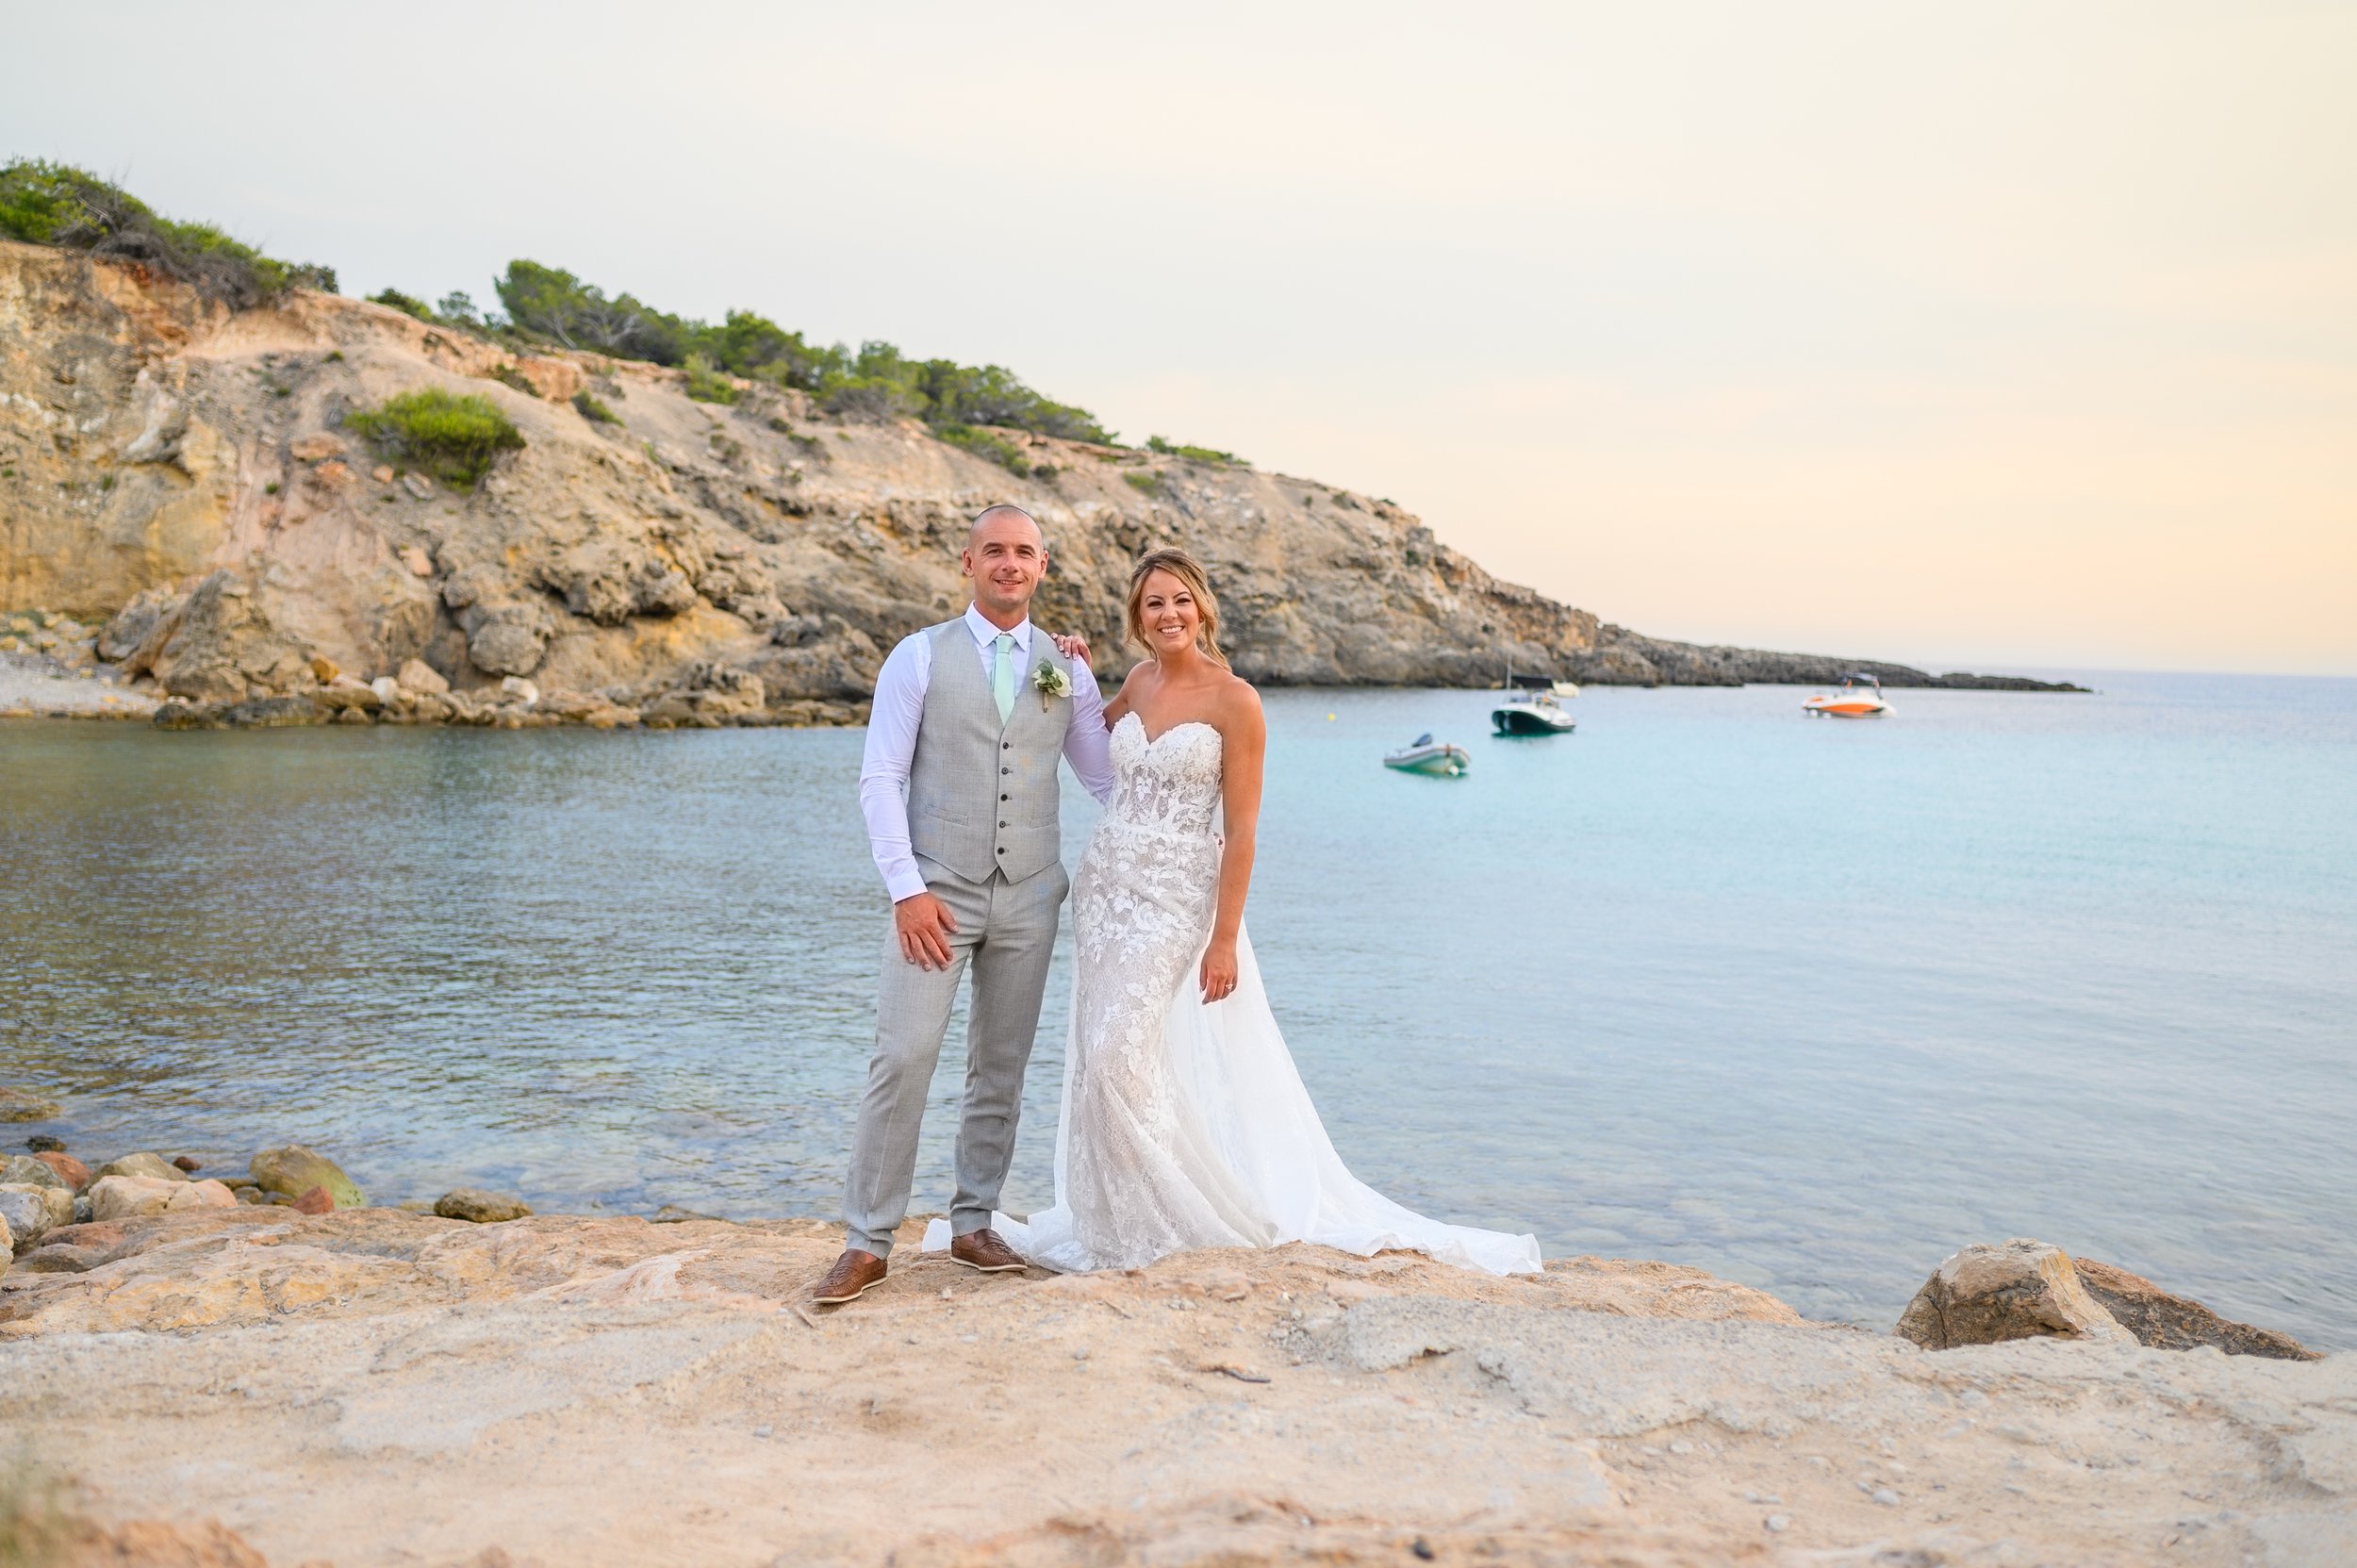 Wedding Photographer Ibiza | Carl Woodward Photography.